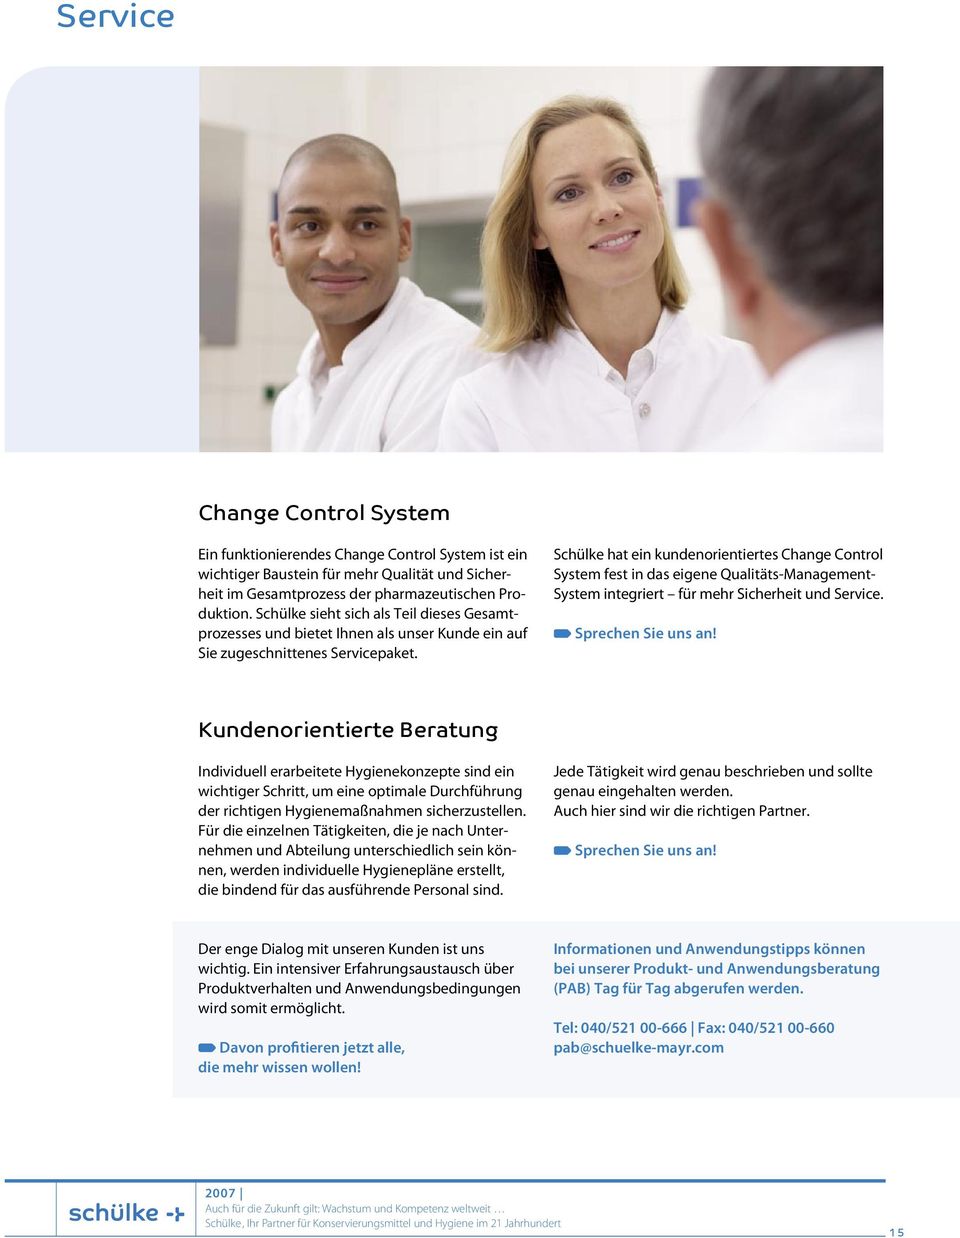 Schülke hat ein kundenorientiertes Change Control System fest in das eigene Qualitäts-Management- System integriert für mehr Sicherheit und Service. Sprechen Sie uns an!